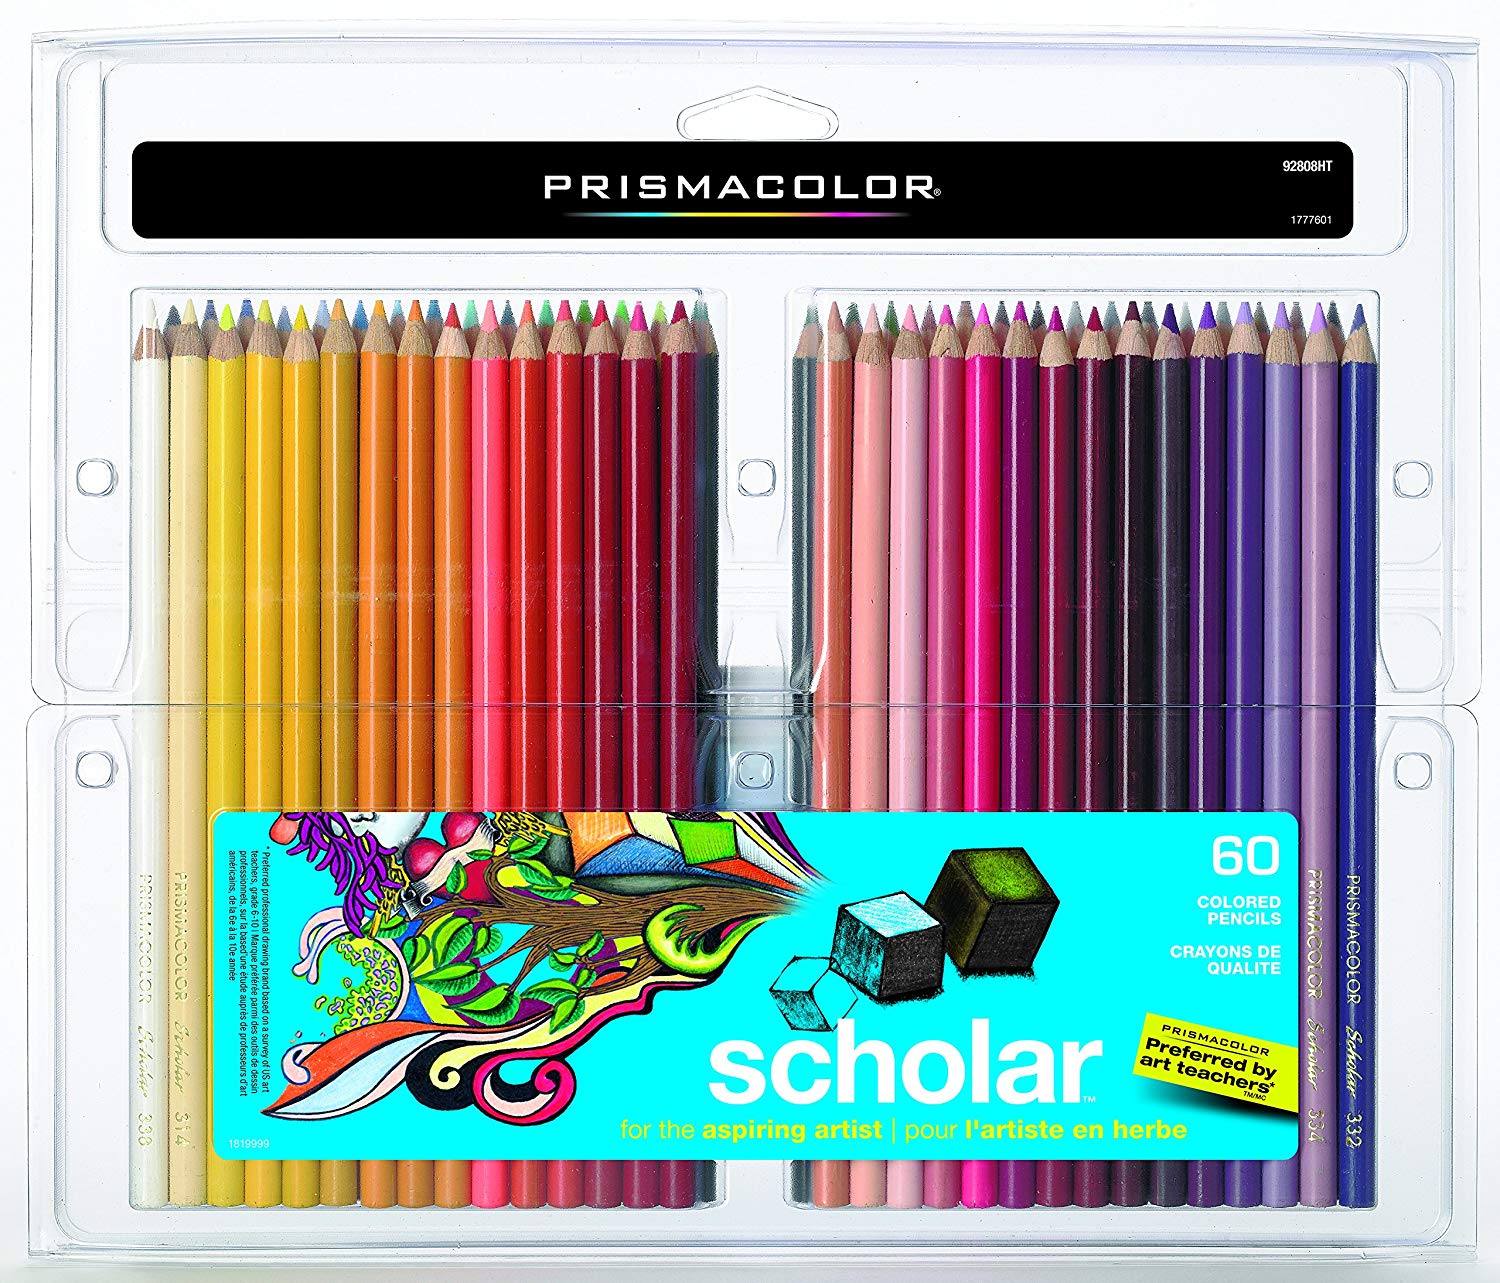 Prismacolor 92808HT Scholar Colored Pencils, 60-Count $20.05 (REG $44.65)